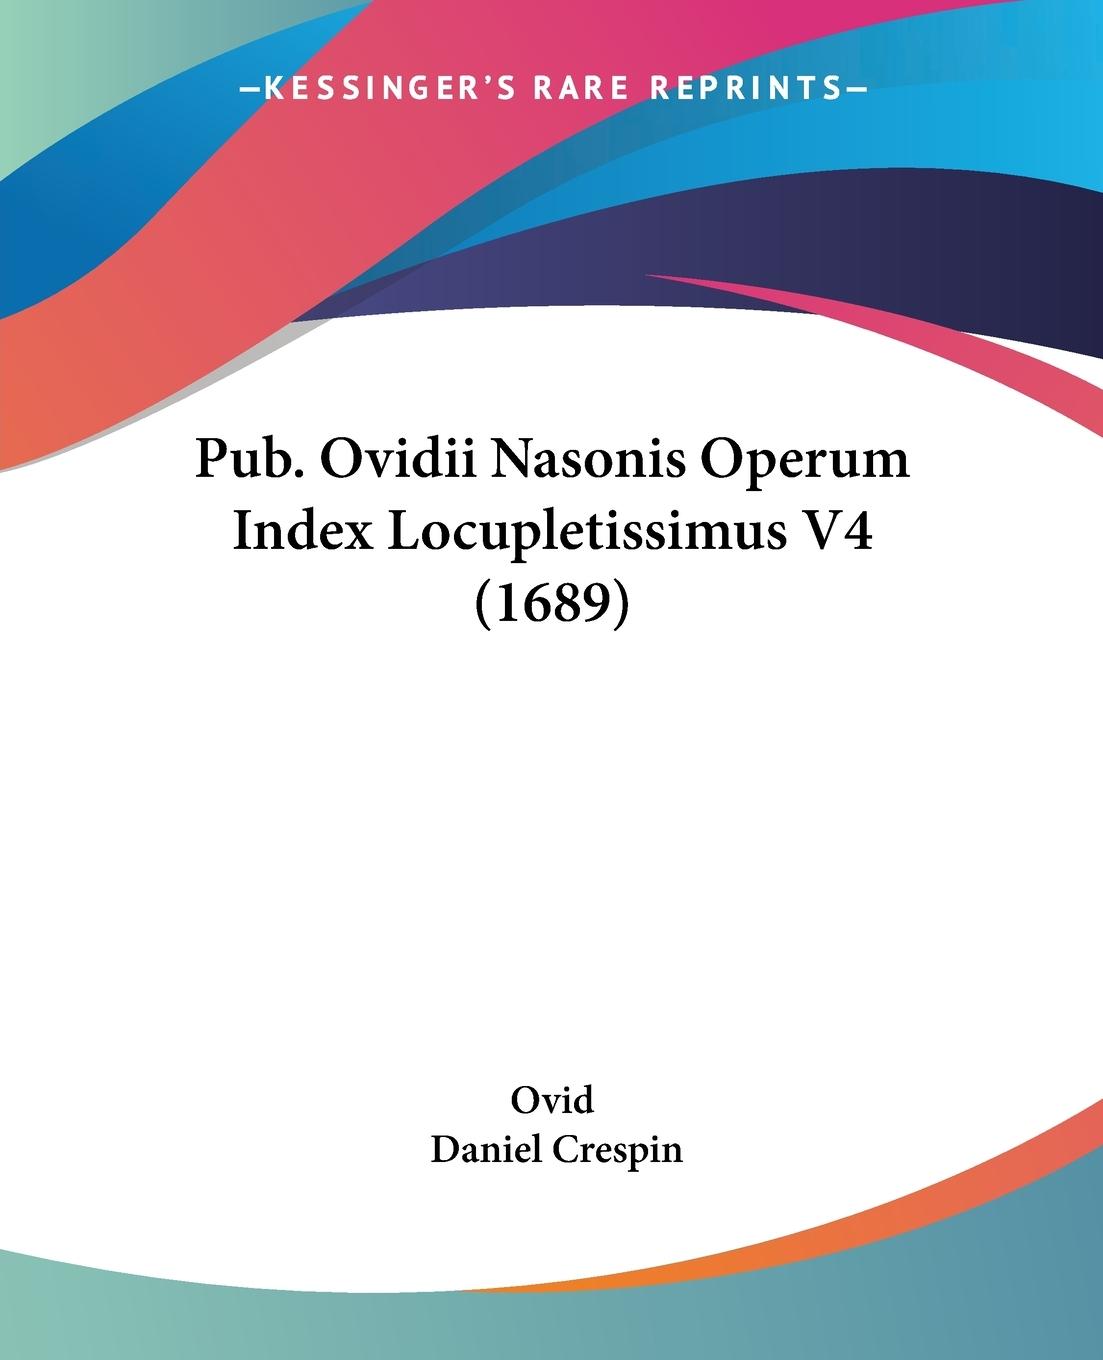 Pub. Ovidii Nasonis Operum Index Locupletissimus V4 (1689) - Ovid